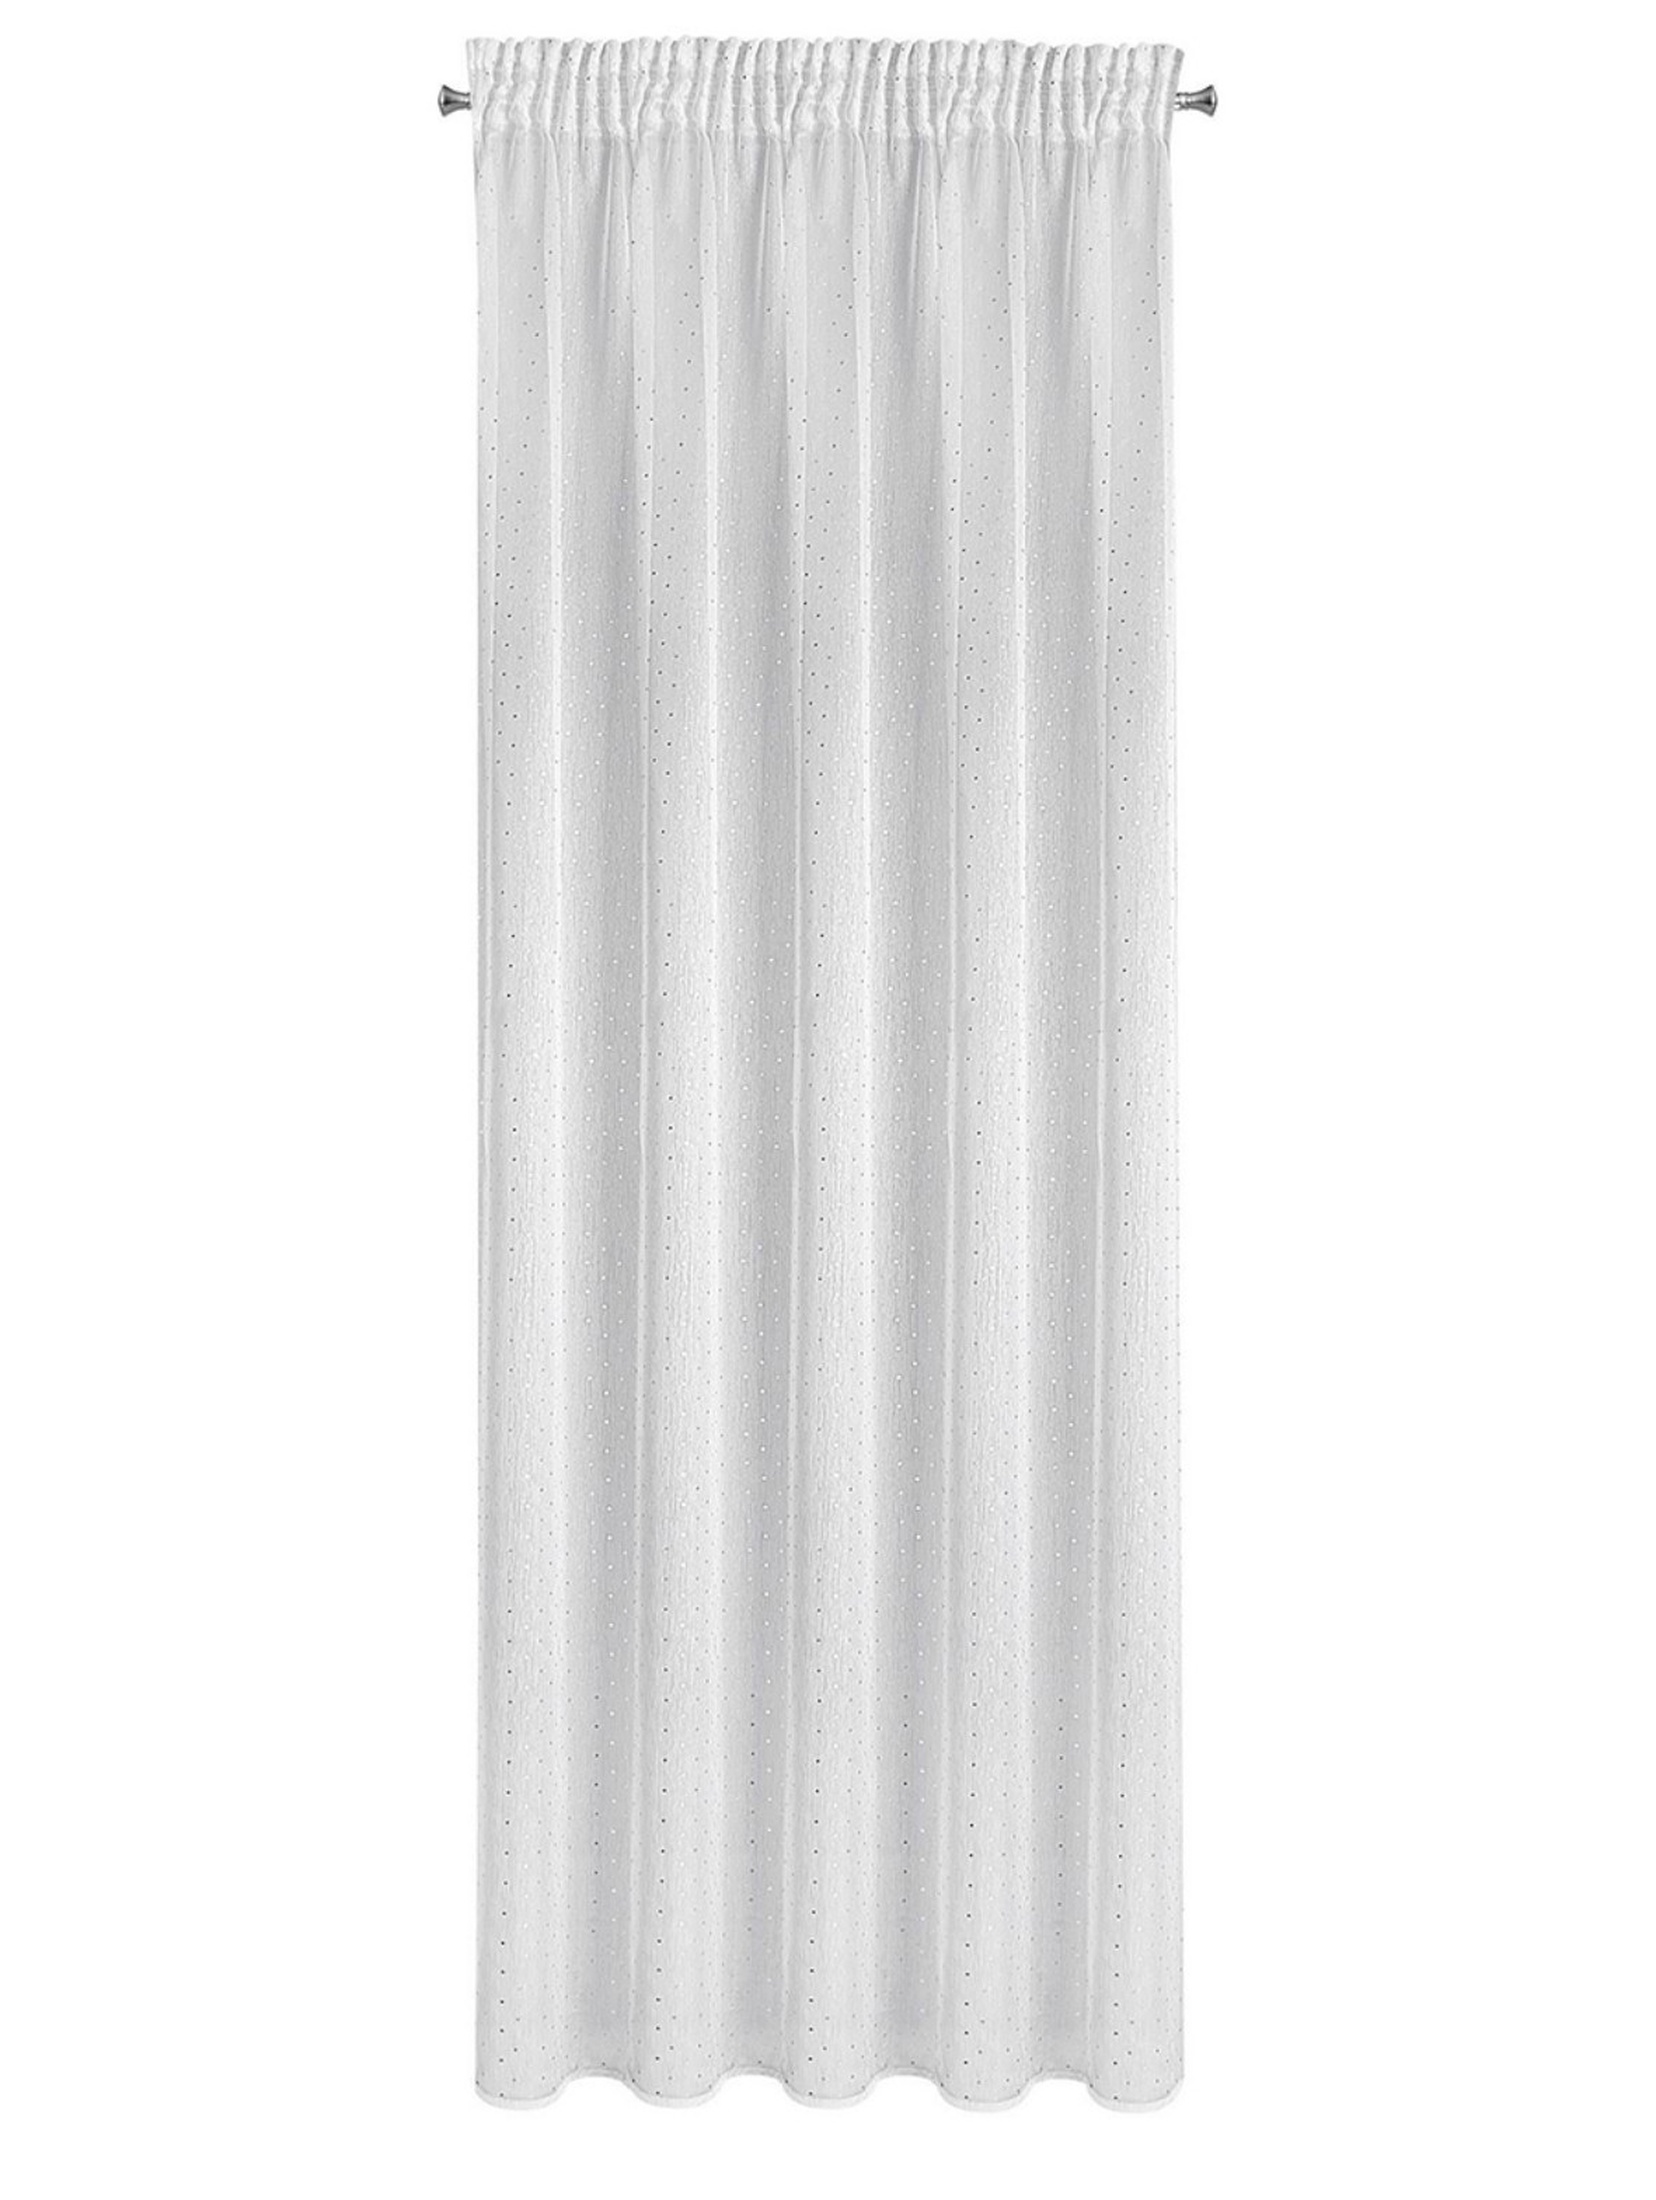 Firana gotowa sibel na taśmie 140x270 cm biały